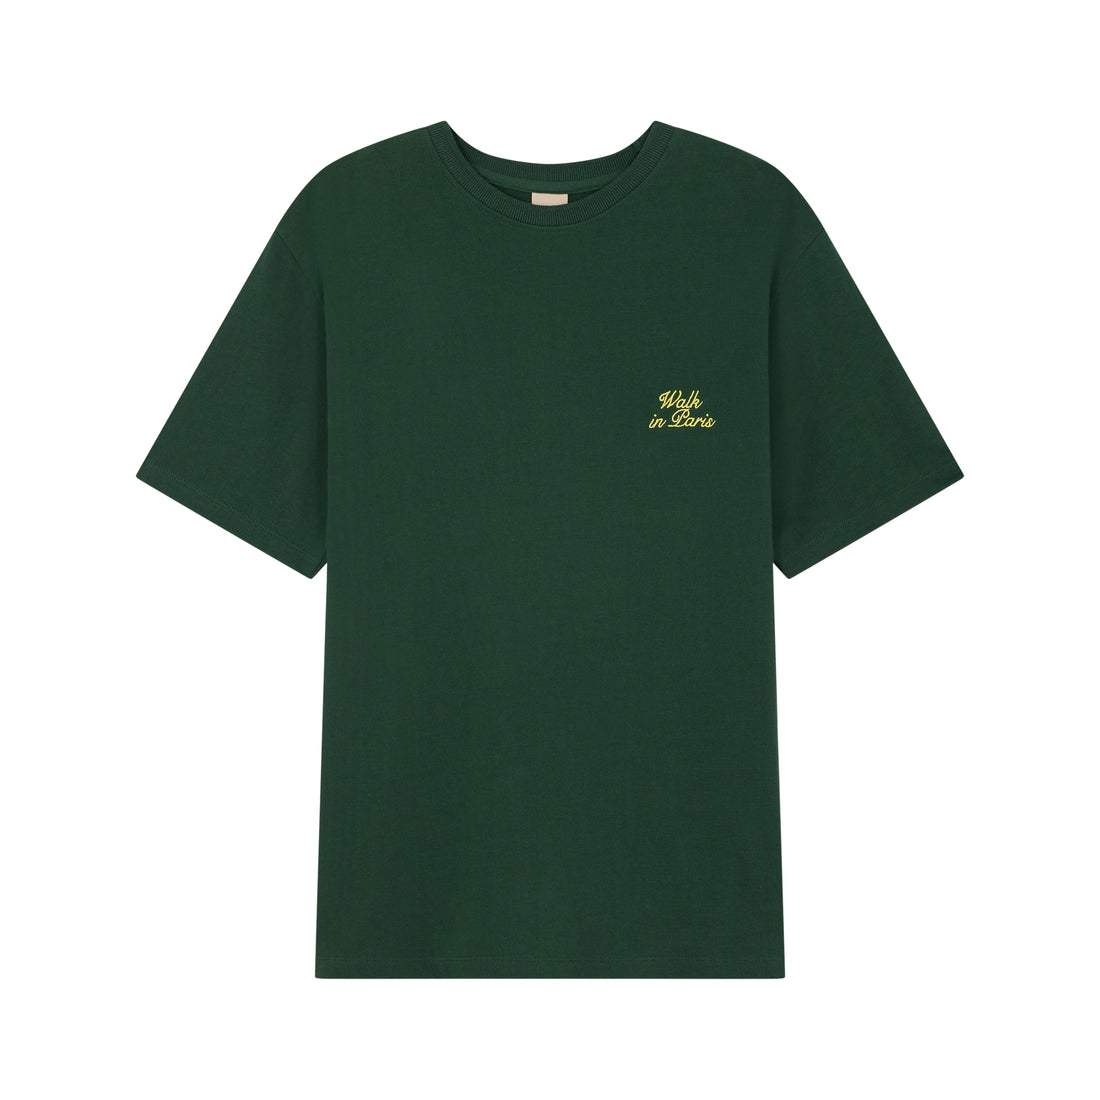 Le t-shirt séquoia brodé